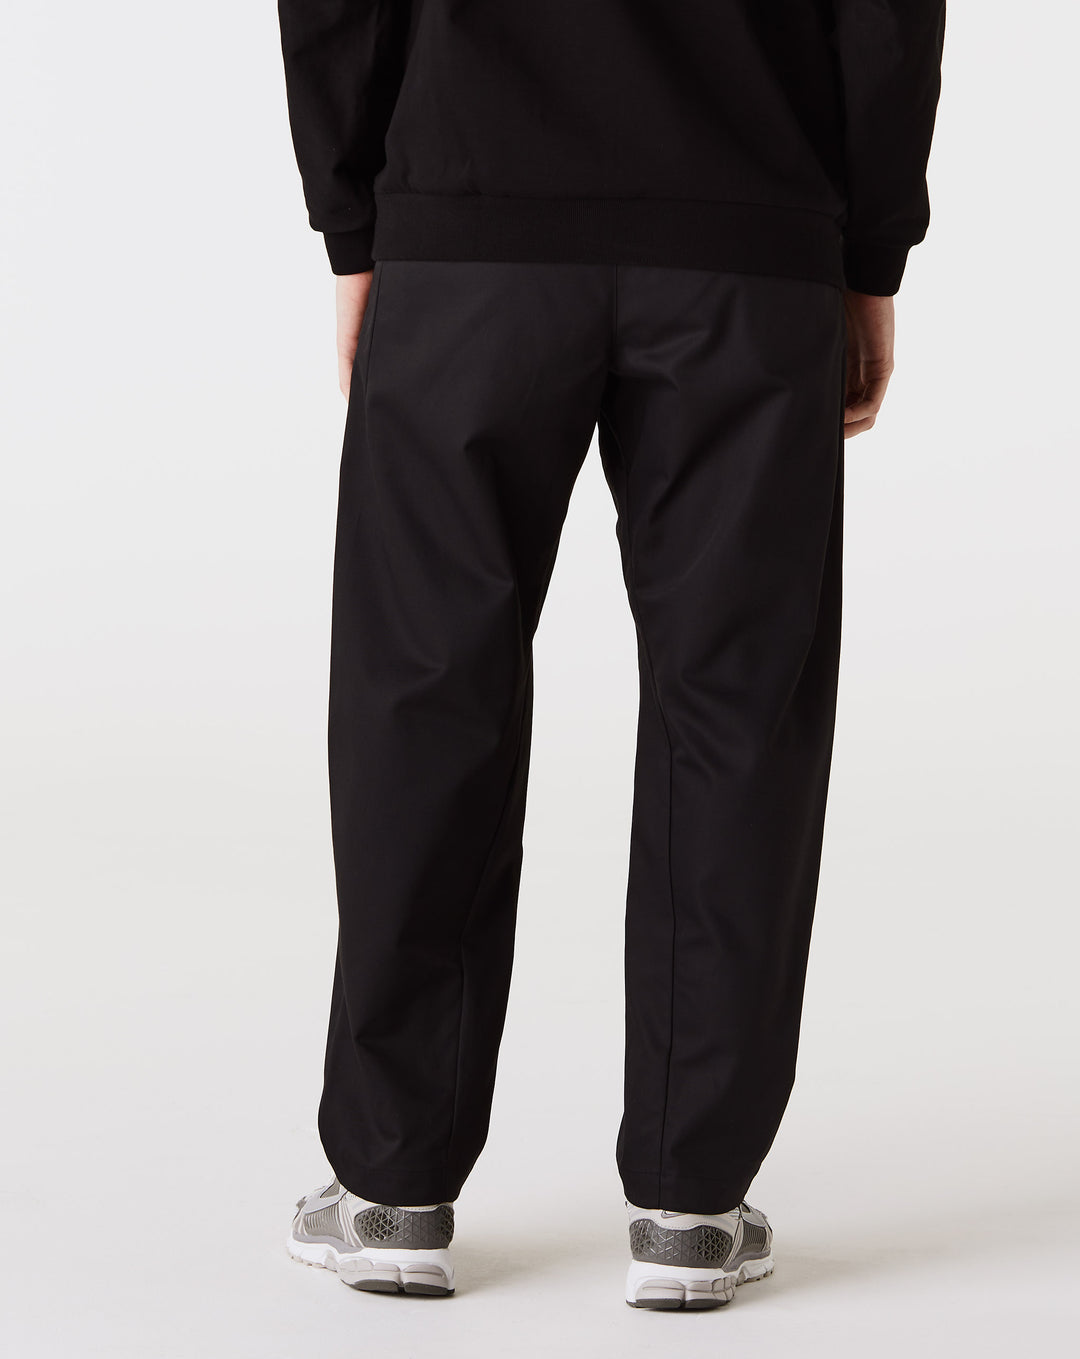 Nike ESC Woven Worker Pants  - XHIBITION